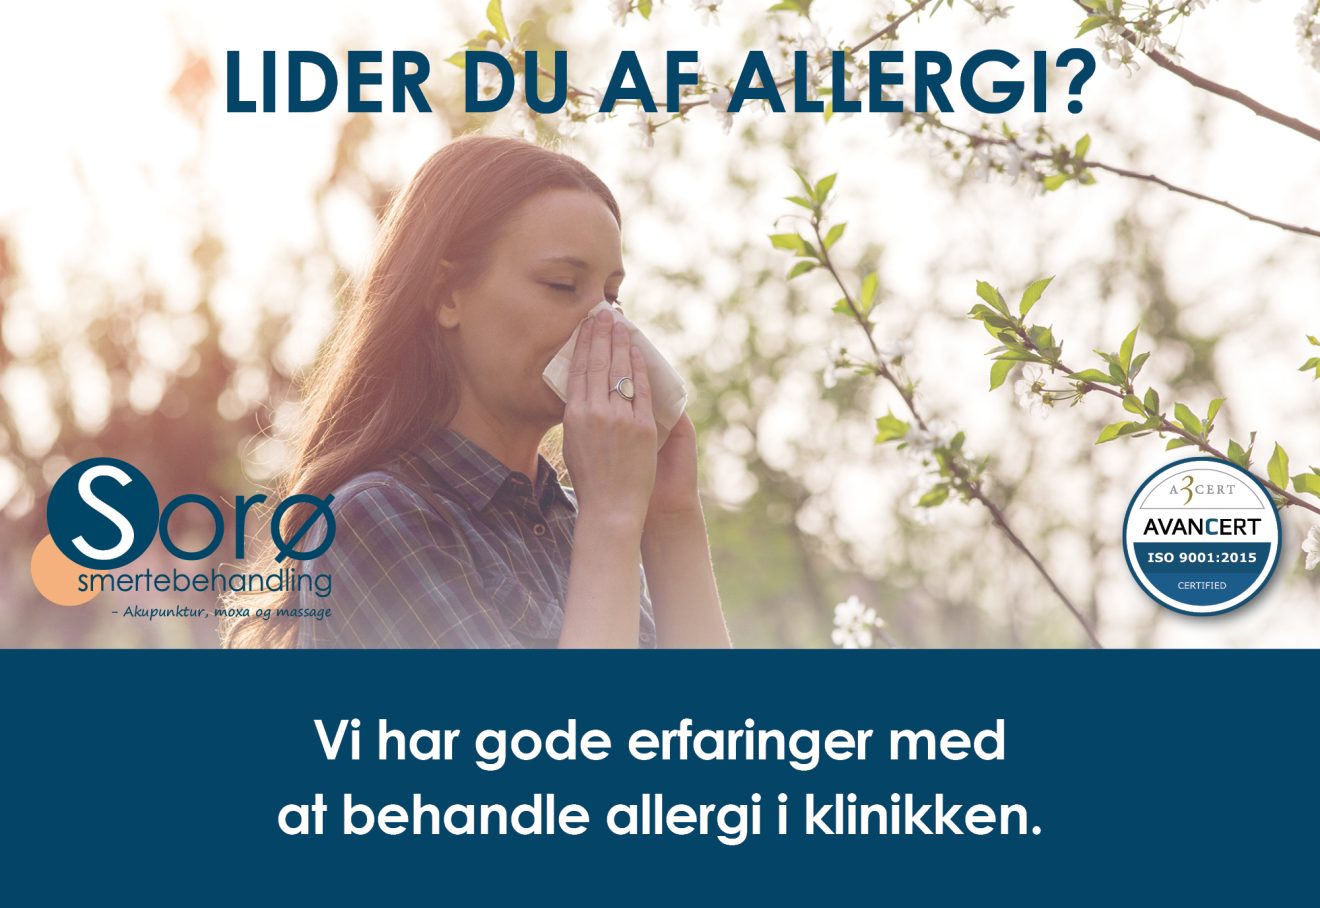 Er du en af dem, der lider af allergi?